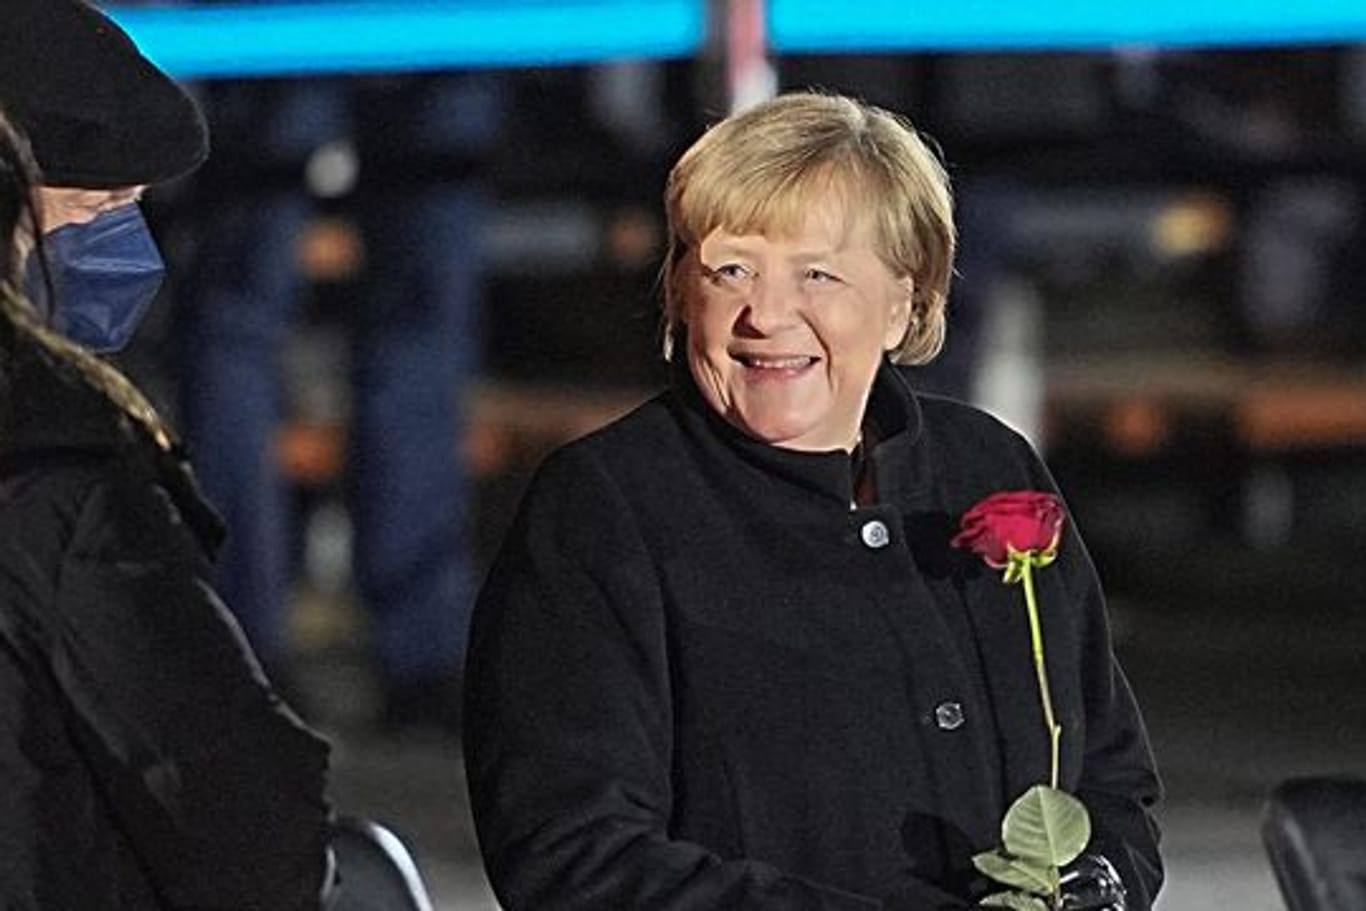 Angela Merkel: "Die 16 Jahre als Bundeskanzlerin waren ereignisreiche und oft sehr herausfordernde Jahre.